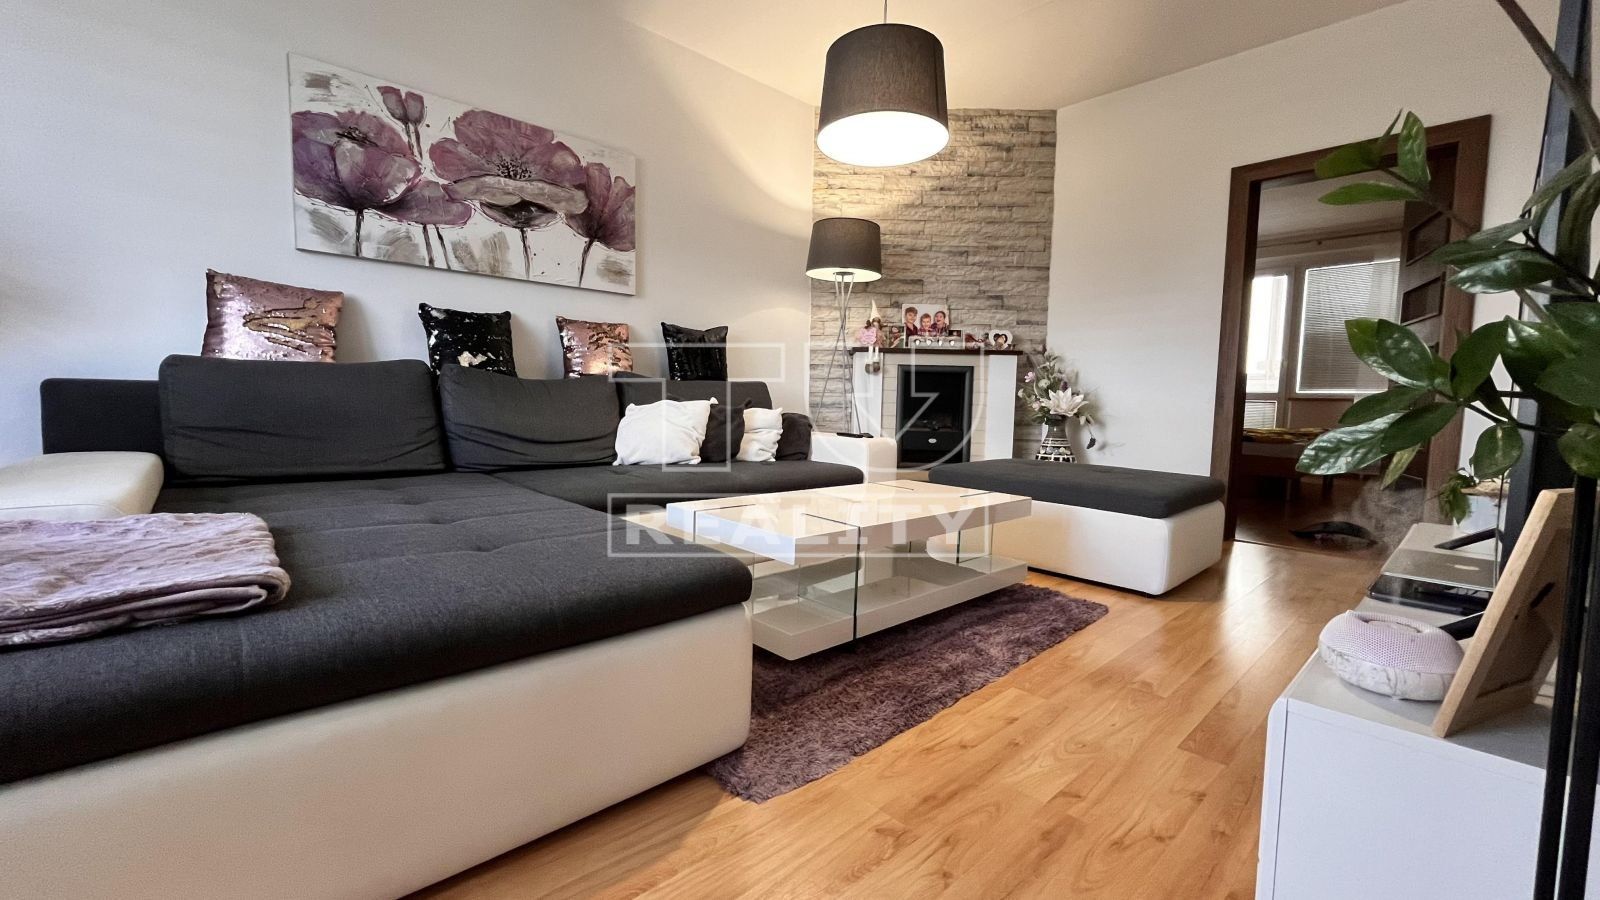 TUreality ponúka na predaj pekný 3i byt v na sídlisku Západ vo Zvolene o výmere 73 m²